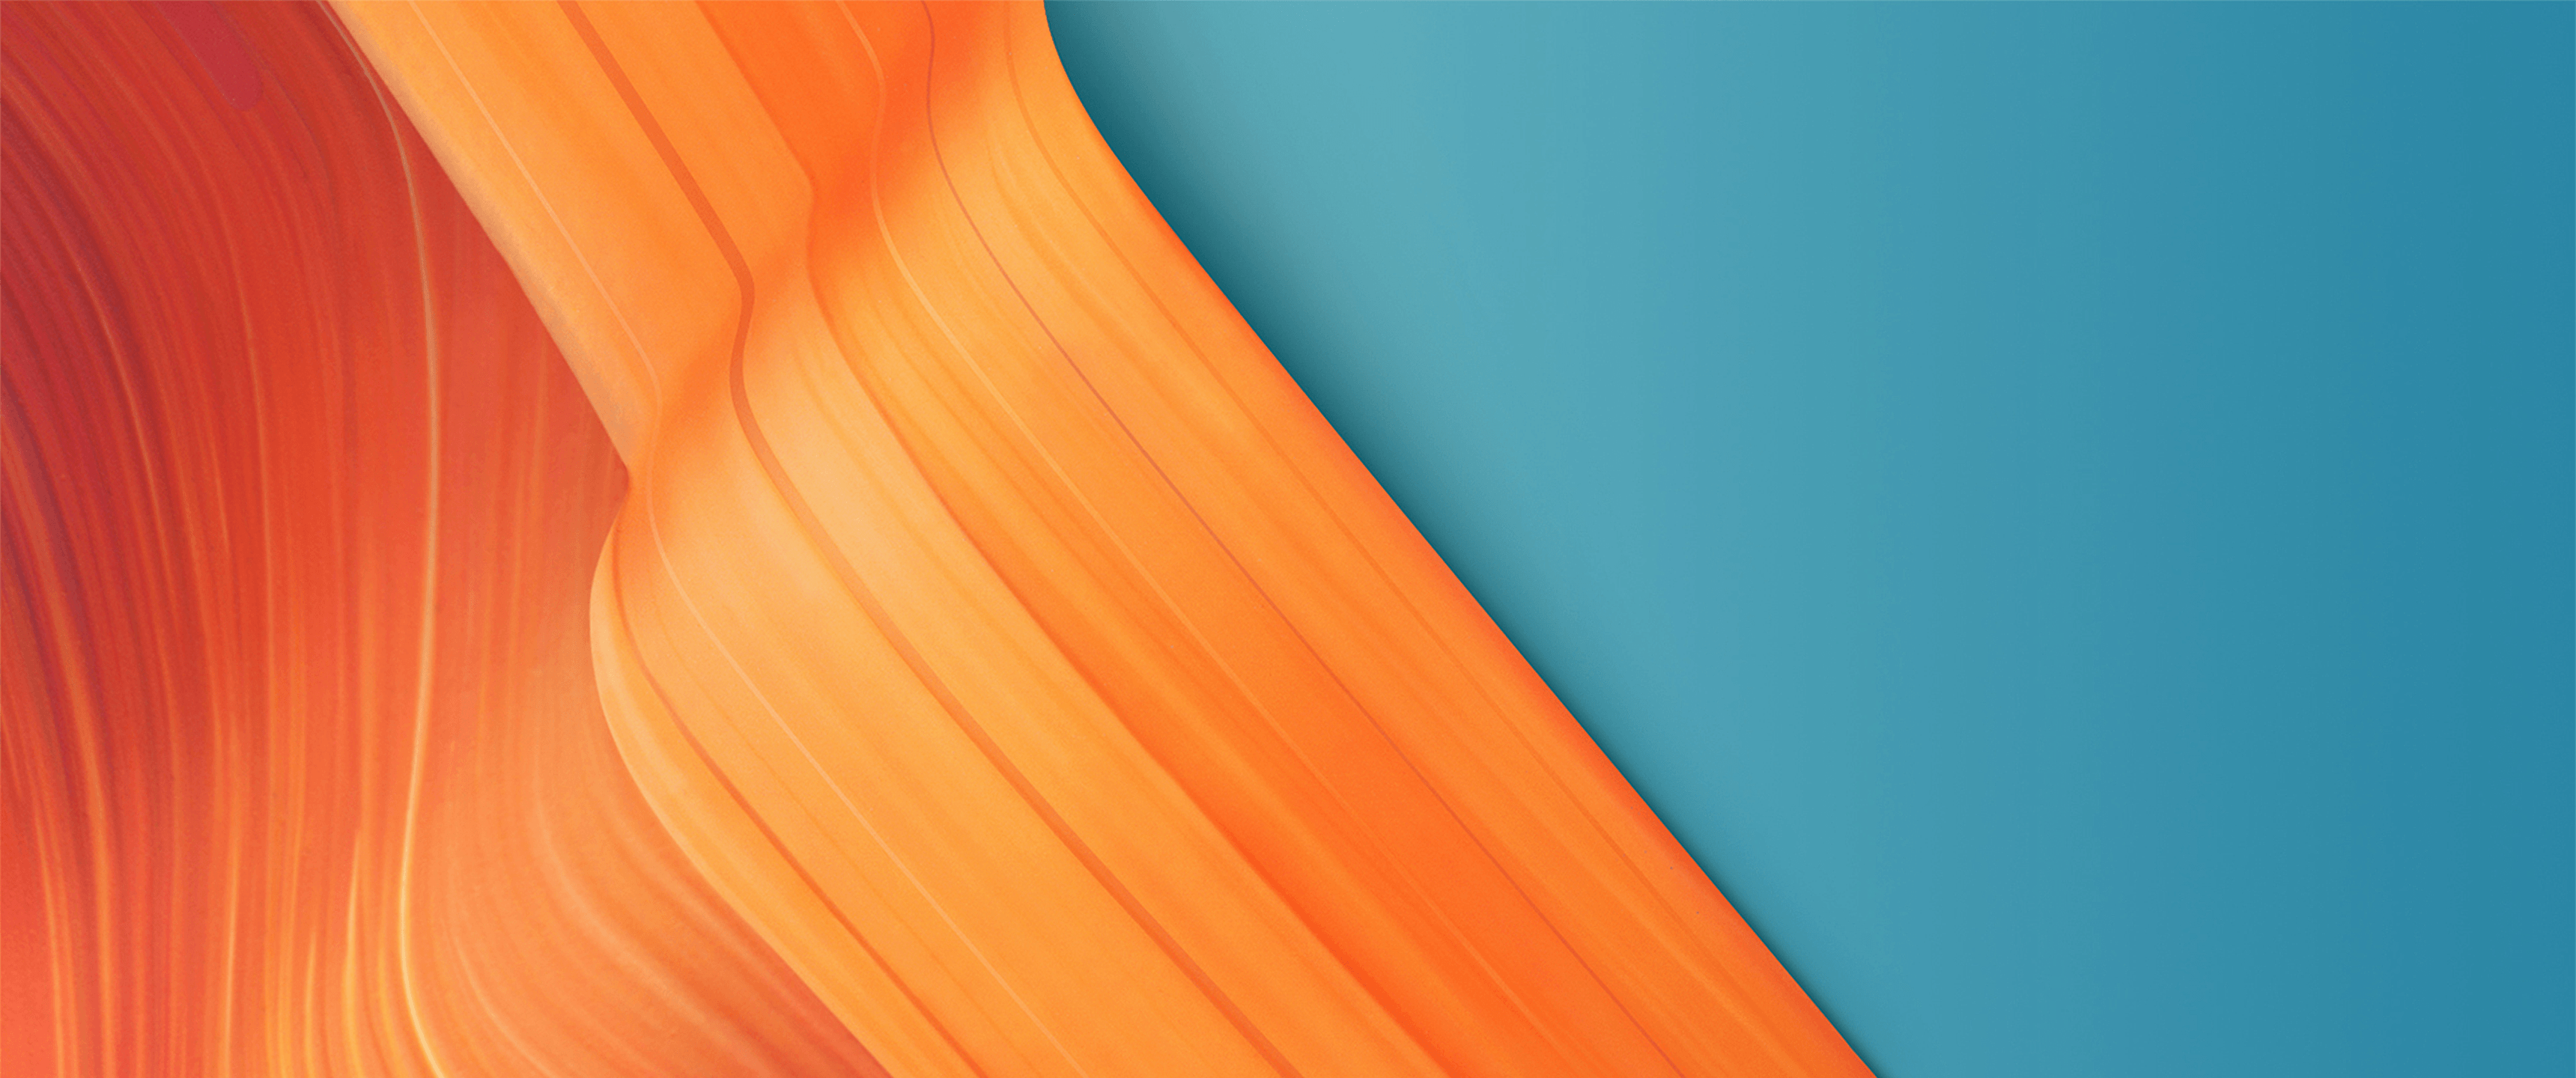 Hình nền Teal And Orange Wallpapers - Màu xanh dương và cam - là tác phẩm tuyệt đẹp sáng tạo cho những ai yêu thích màu sắc đậm chất cá tính. Bộ sưu tập này cung cấp nhiều lựa chọn đa dạng về phong cách và hoa văn thú vị, rất phù hợp để trang trí nền desktop hay điện thoại của bạn.